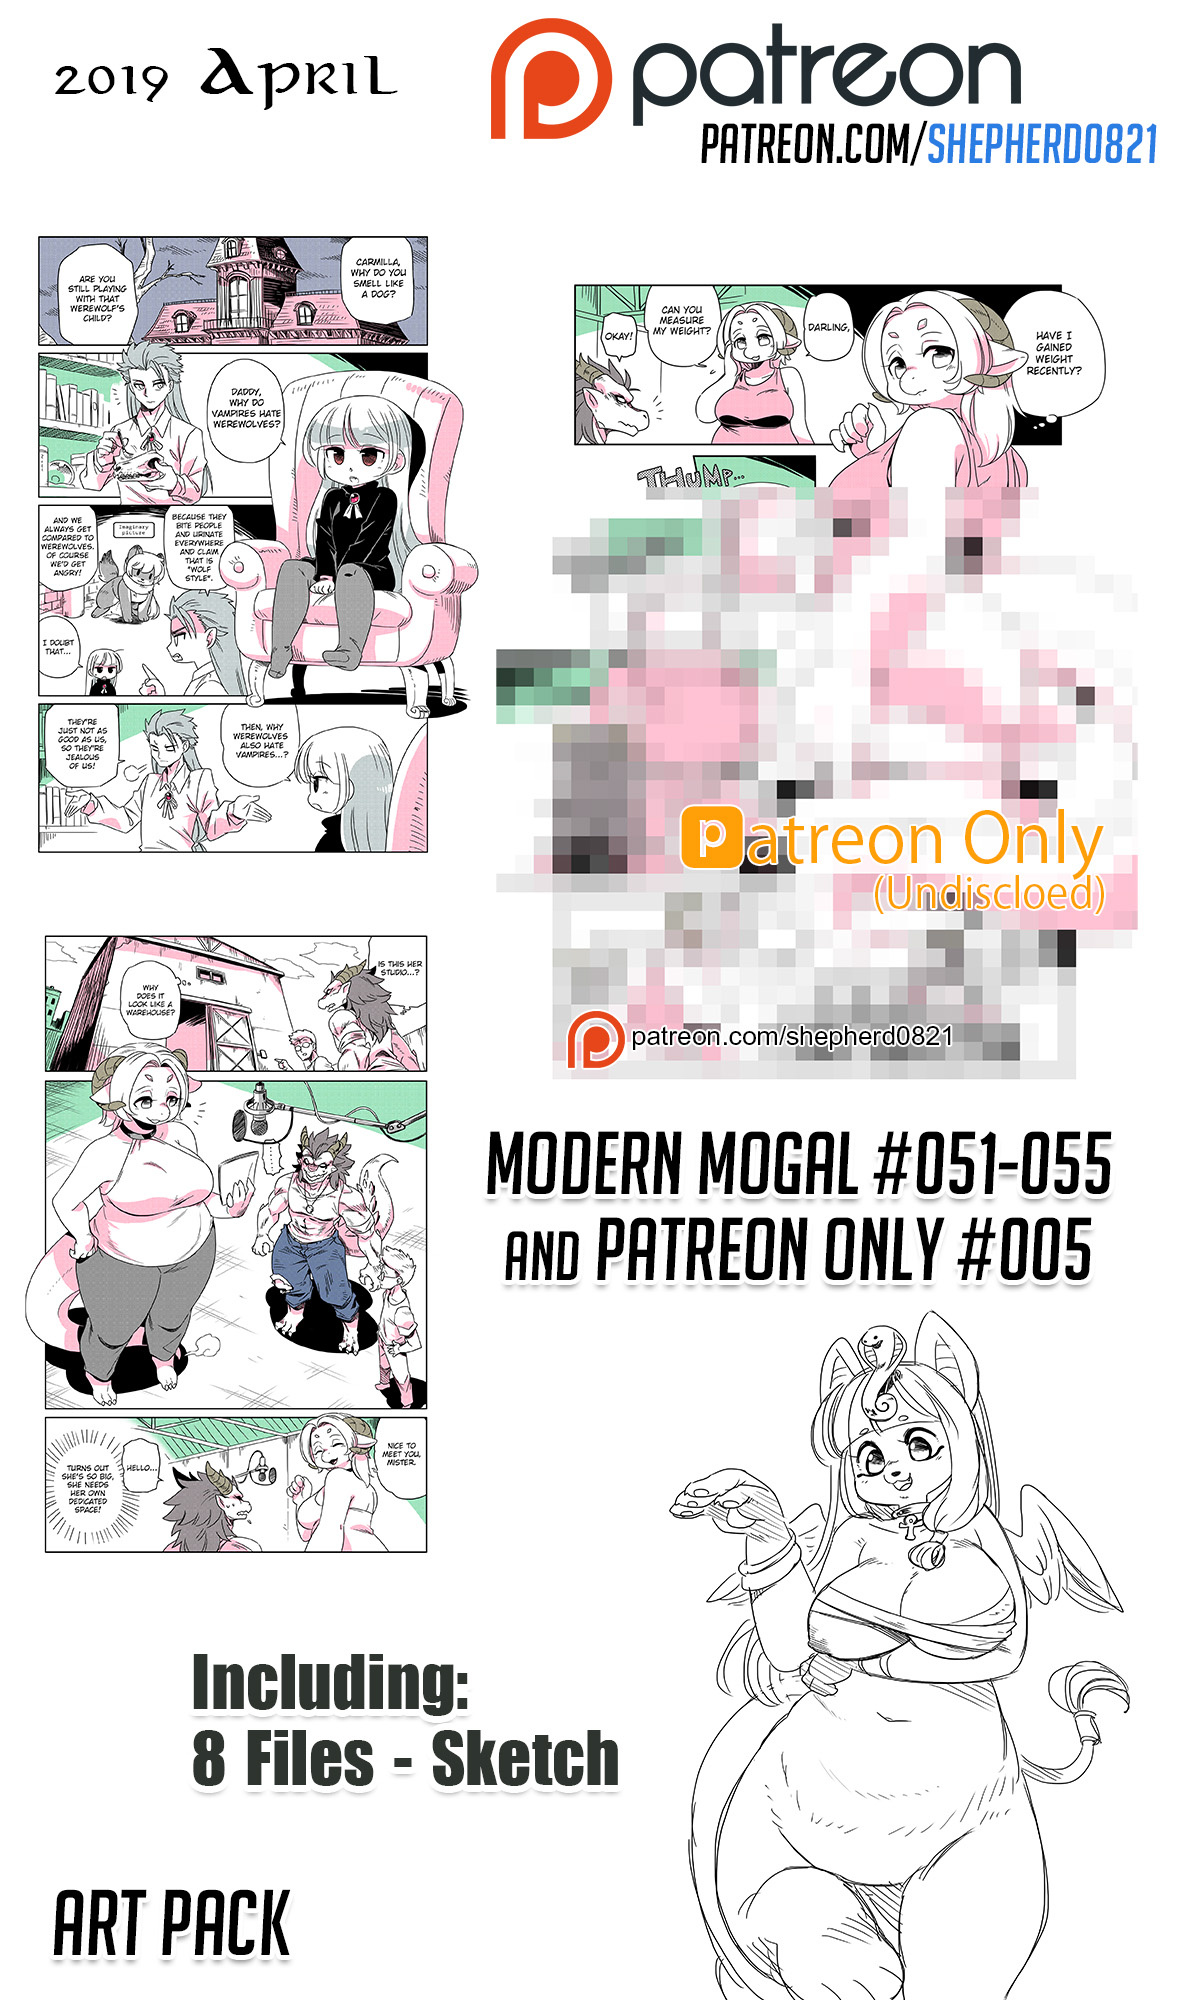 Modern Mogal - Page 1